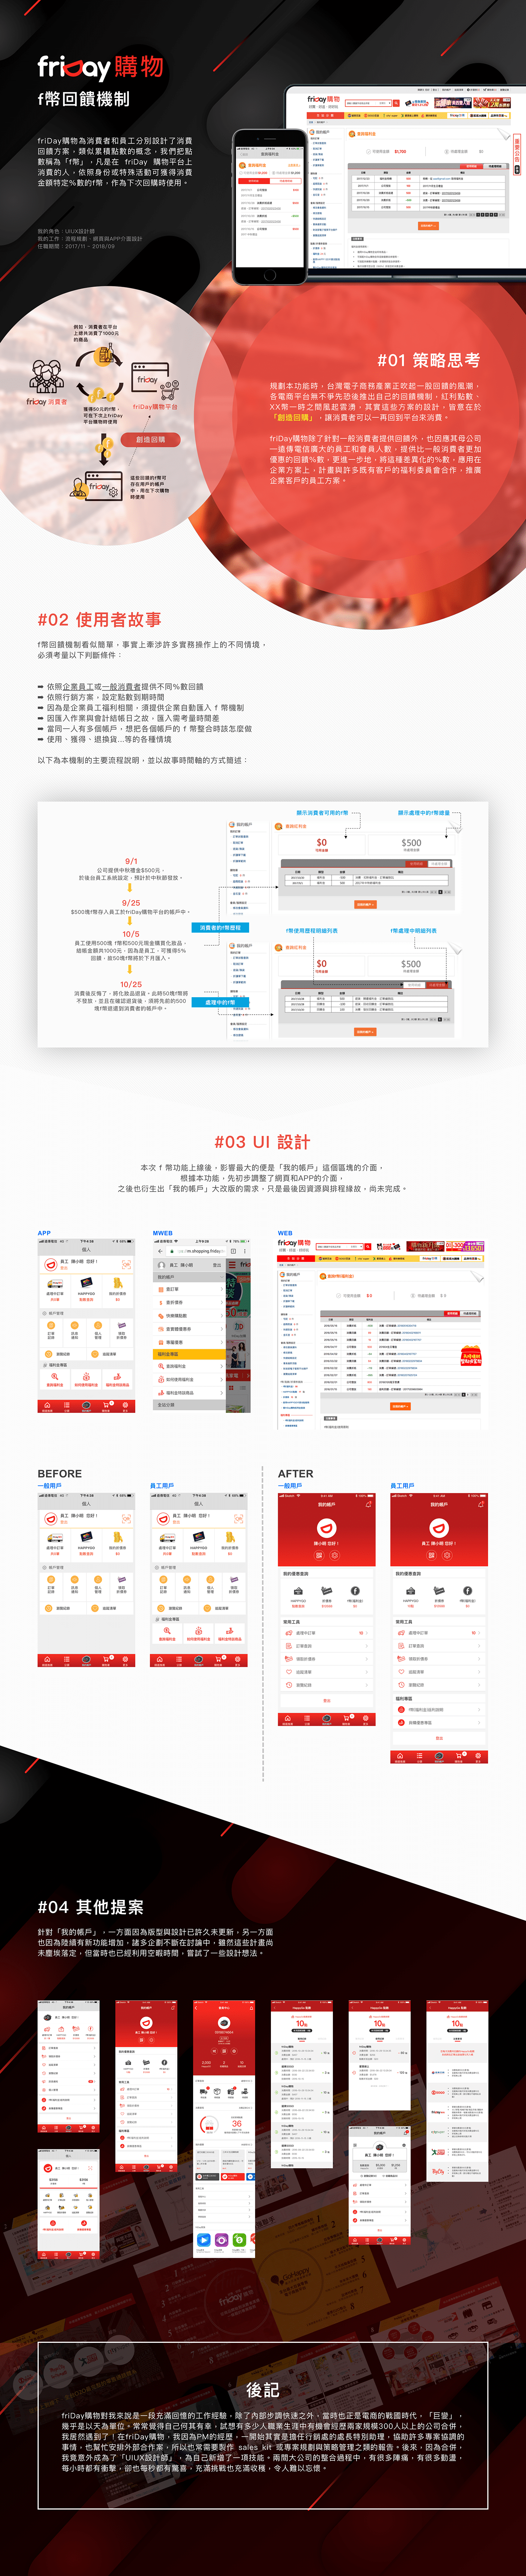 uiux friDay購物 UIUX design Ecommerce app design Web Design 